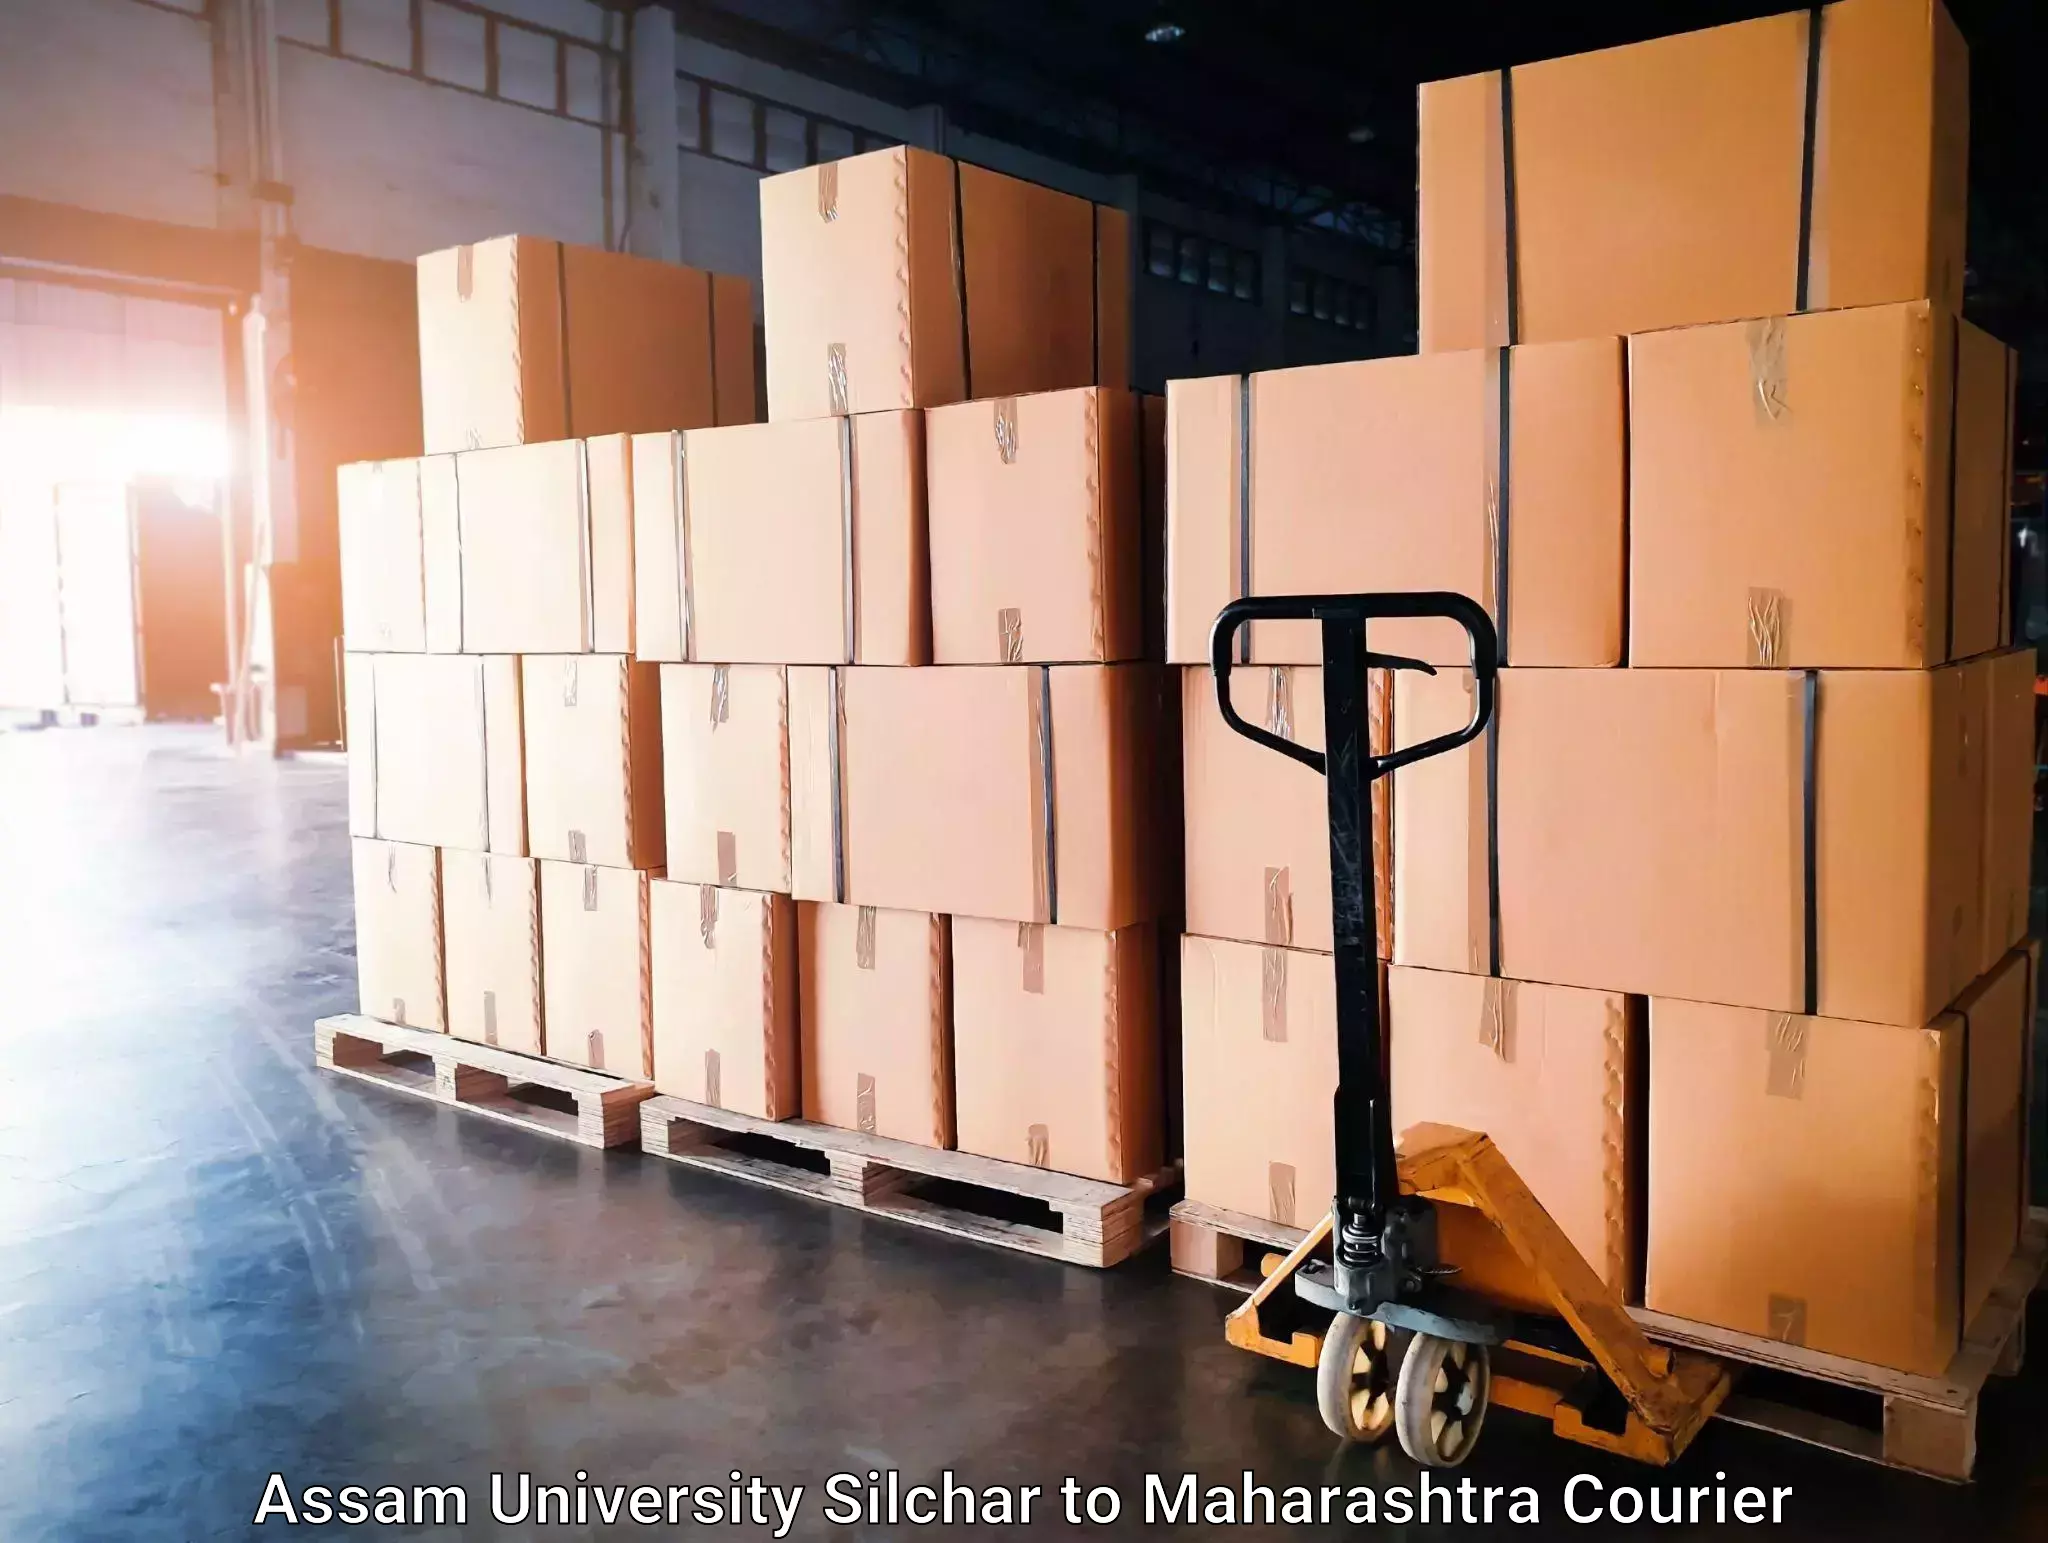 Global shipping networks Assam University Silchar to Dr Babasaheb Ambedkar Marathwada University Aurangabad